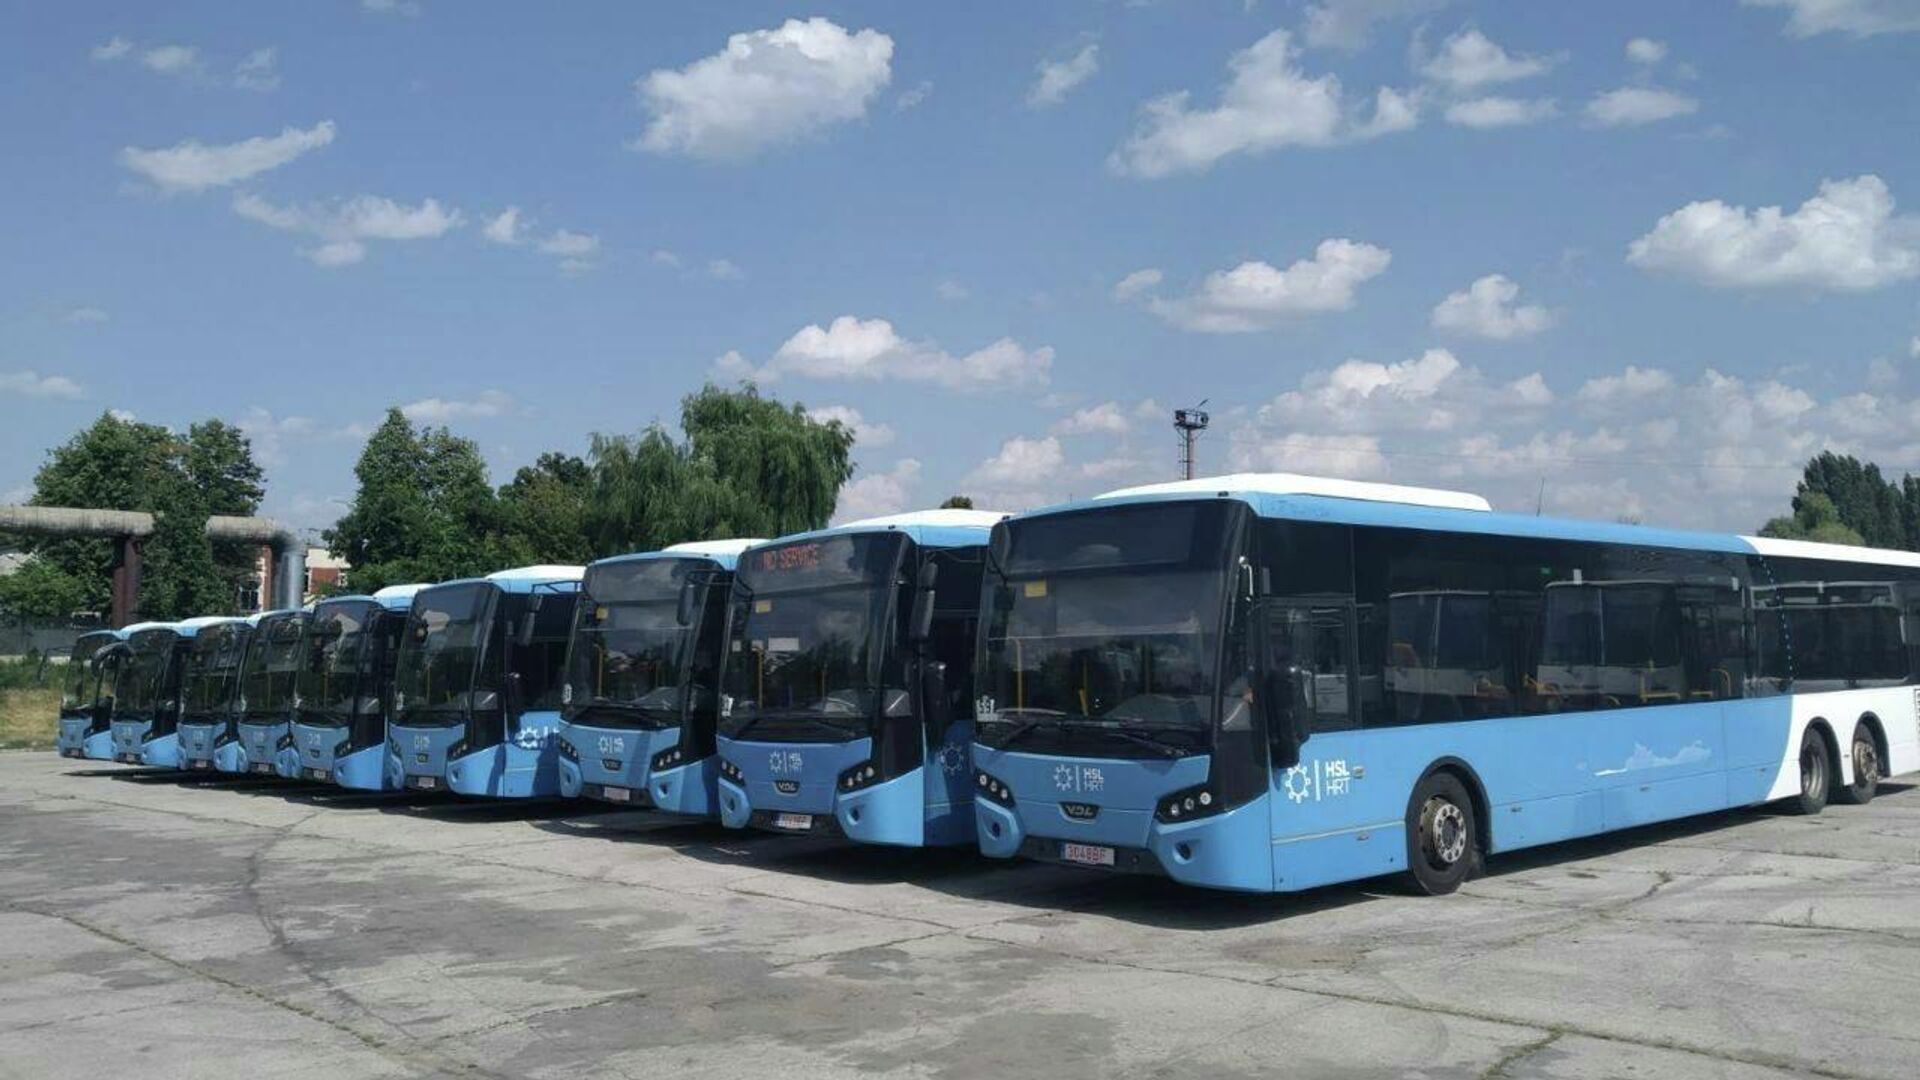 Автобусы с пробегом из Нидерландов прибыли в Кишинев - Sputnik Молдова, 1920, 02.08.2021